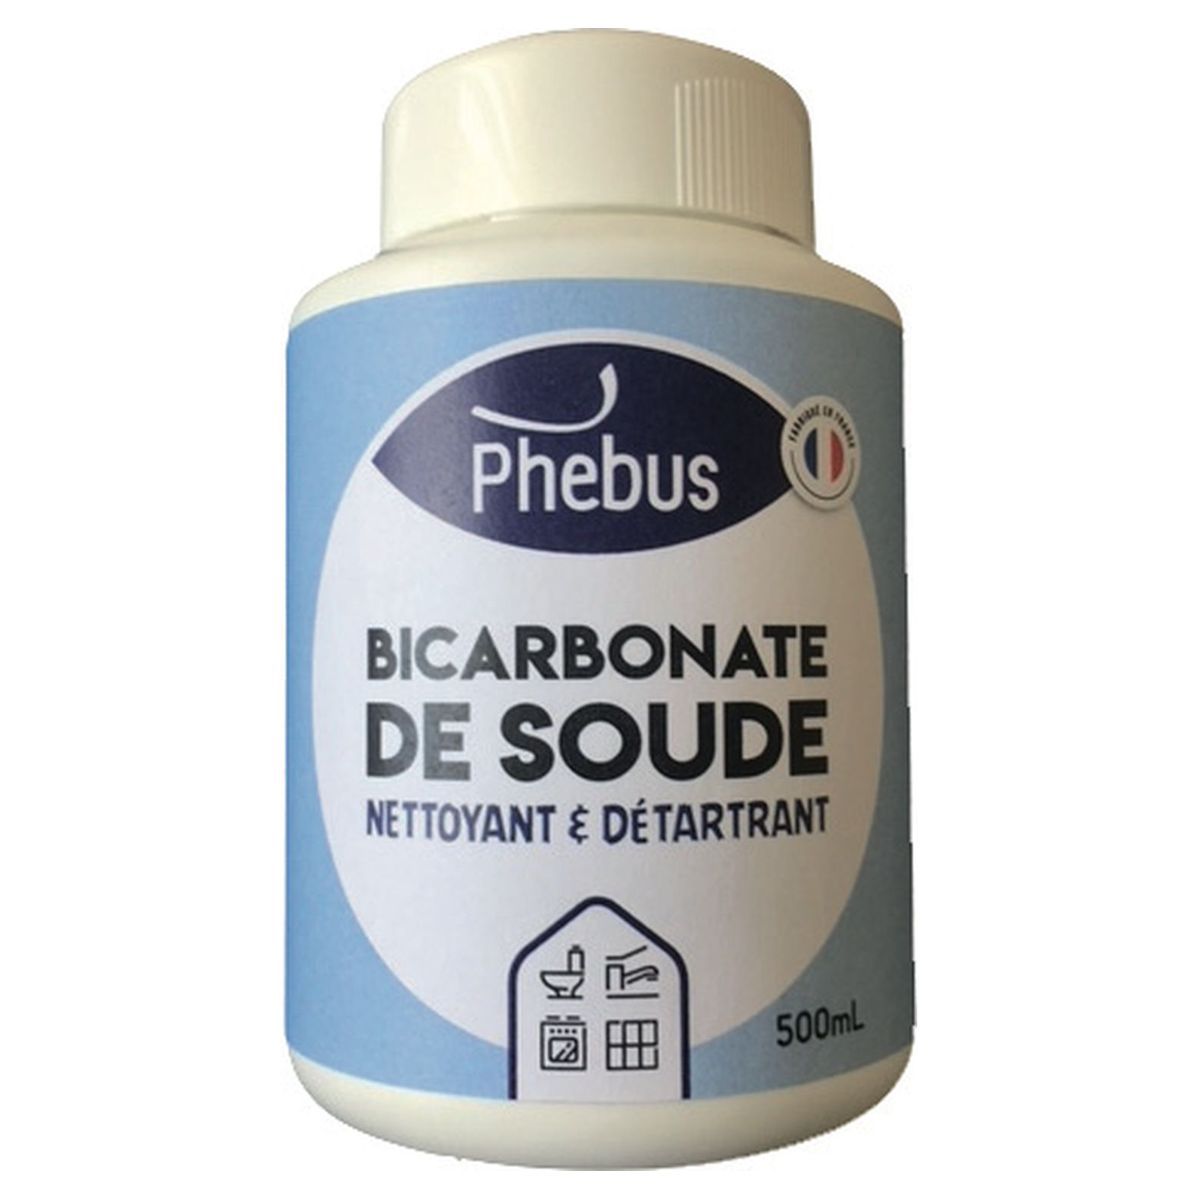 PHEBUS Bicarbonate de soude nettoyant et détartant 500ml 500ml